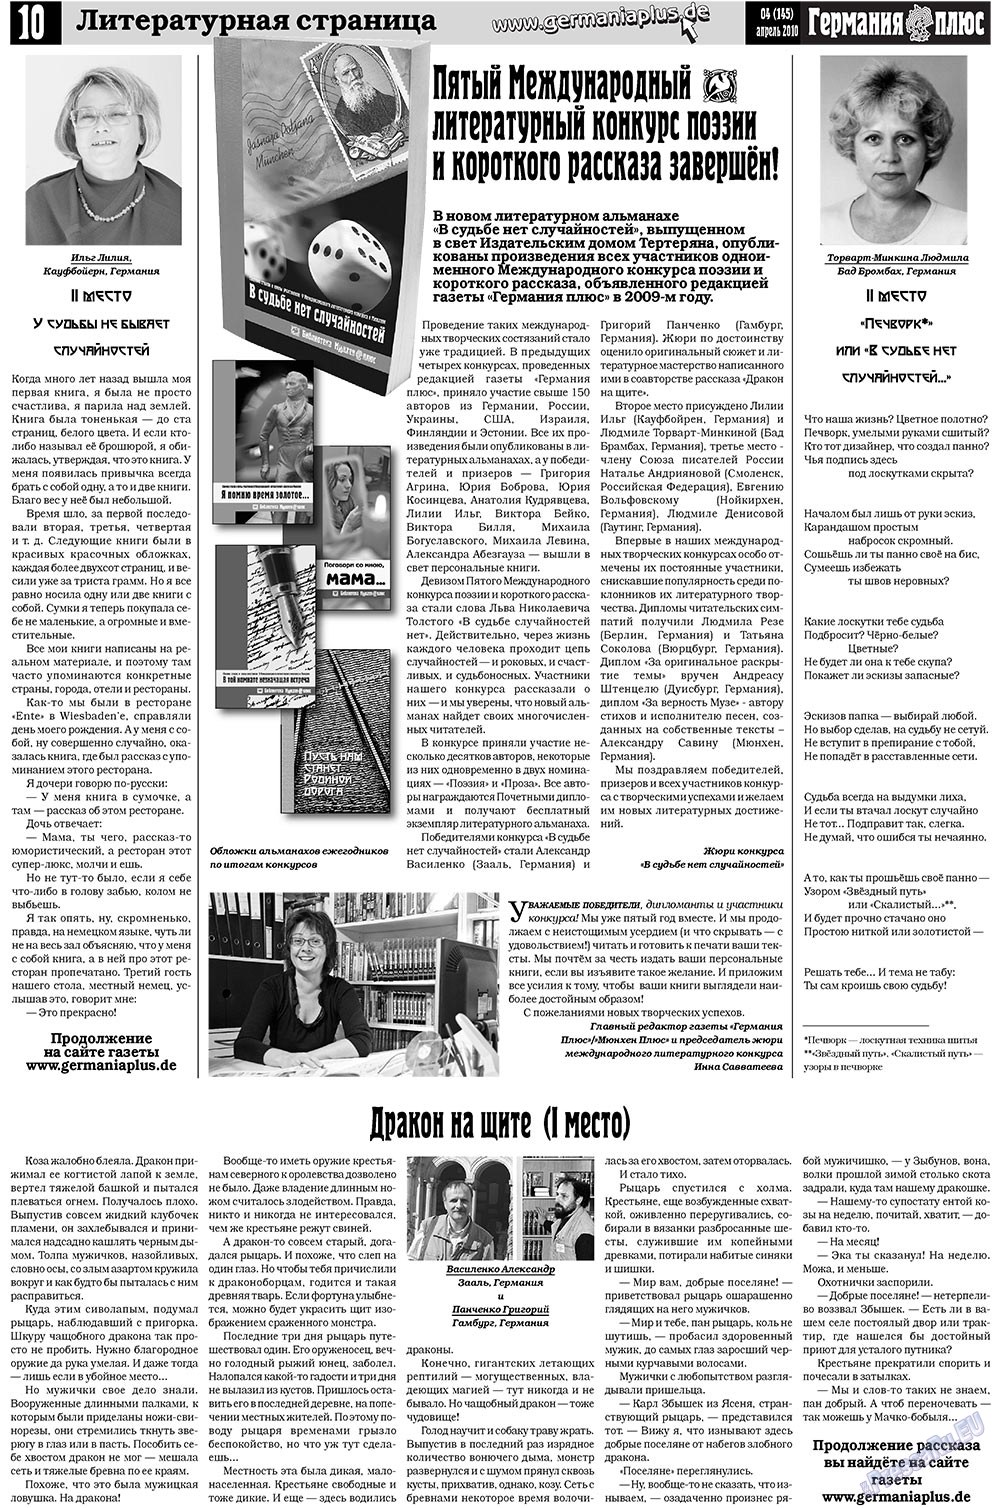 Германия плюс (газета). 2010 год, номер 4, стр. 10